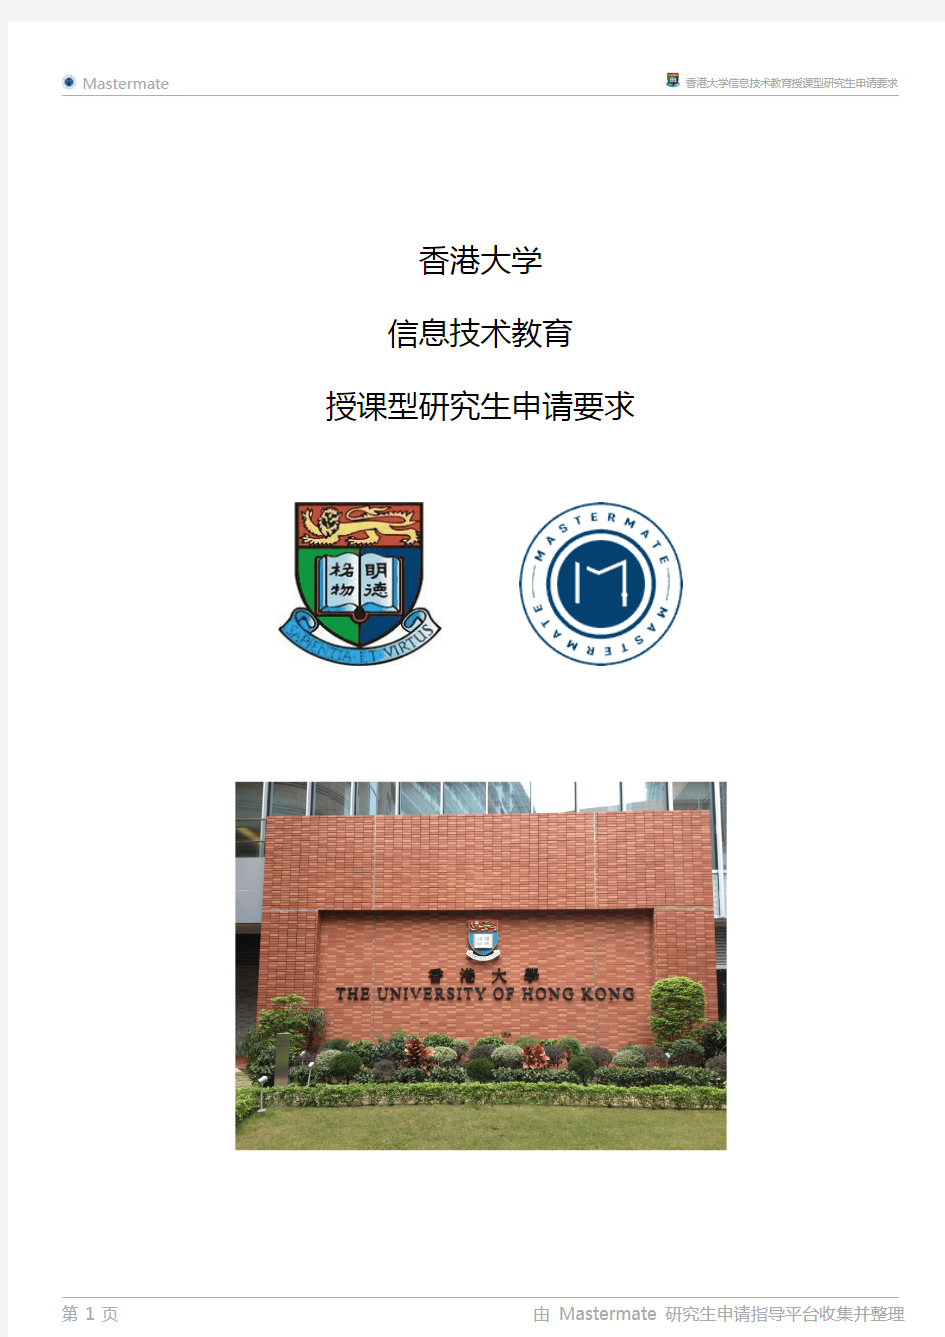 香港大学信息技术教育授课型研究生申请要求